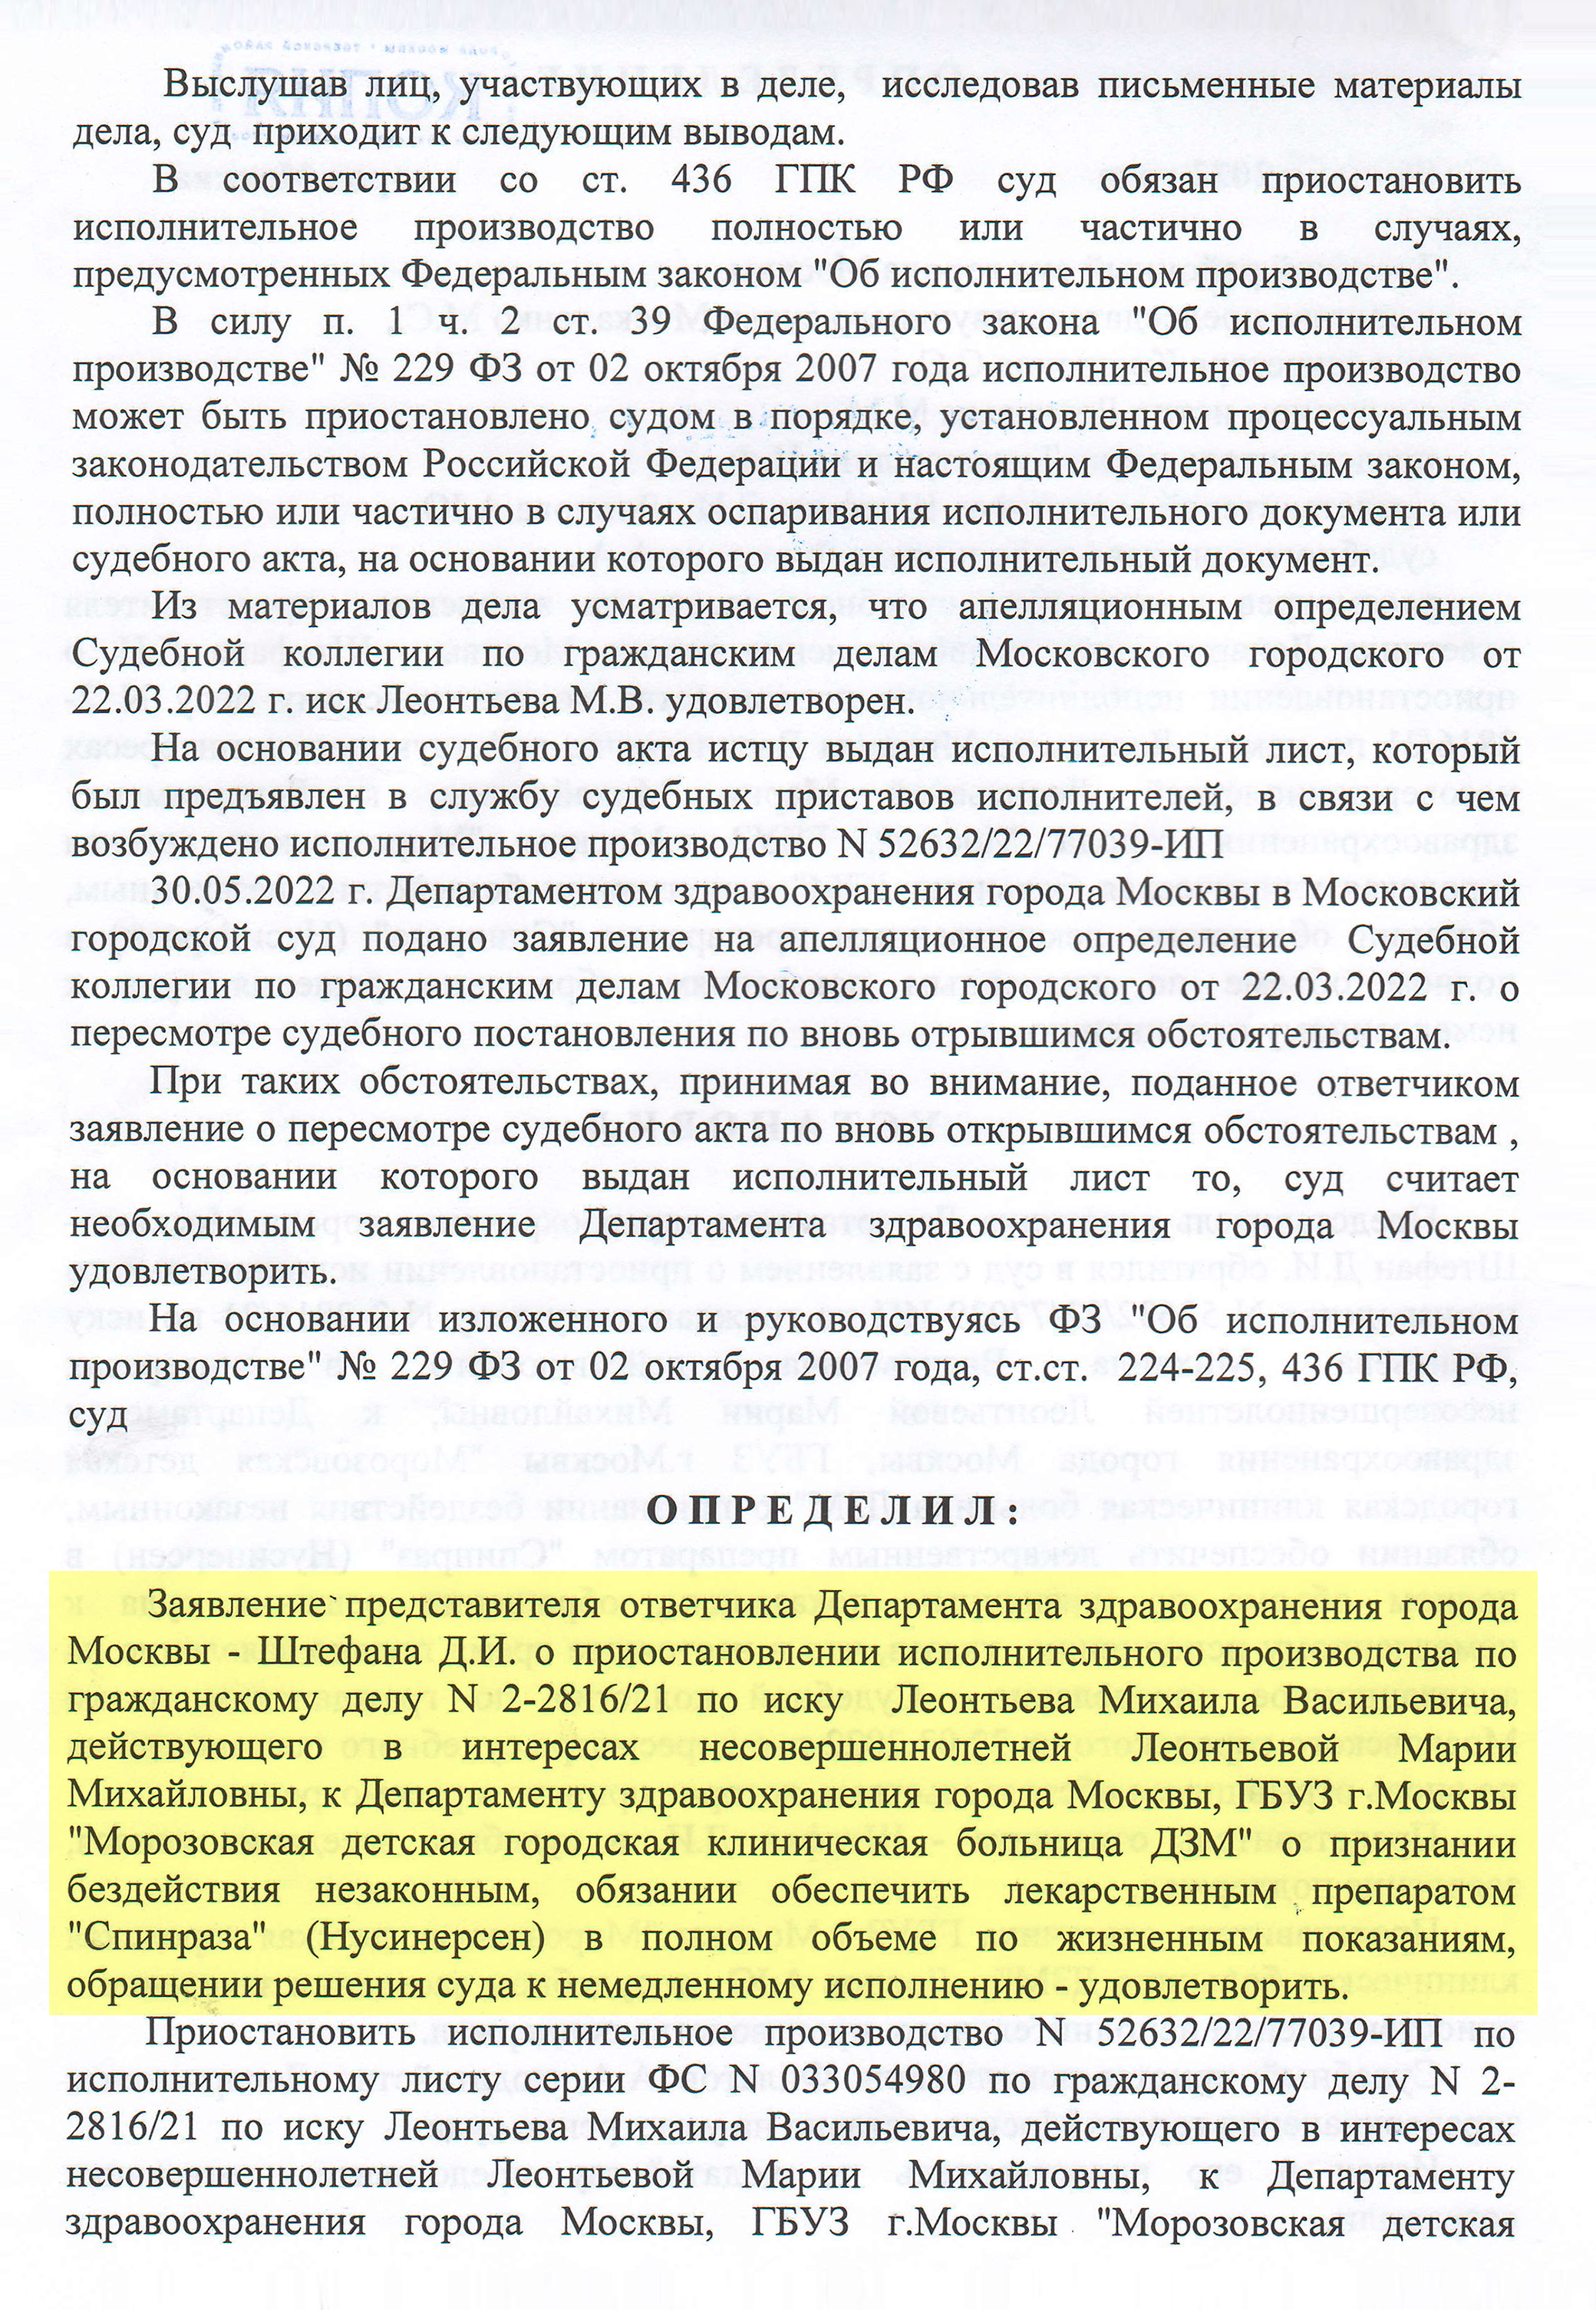 После заключения этой комиссии 6 июня Тверской суд определил приостановить исполнительное производство